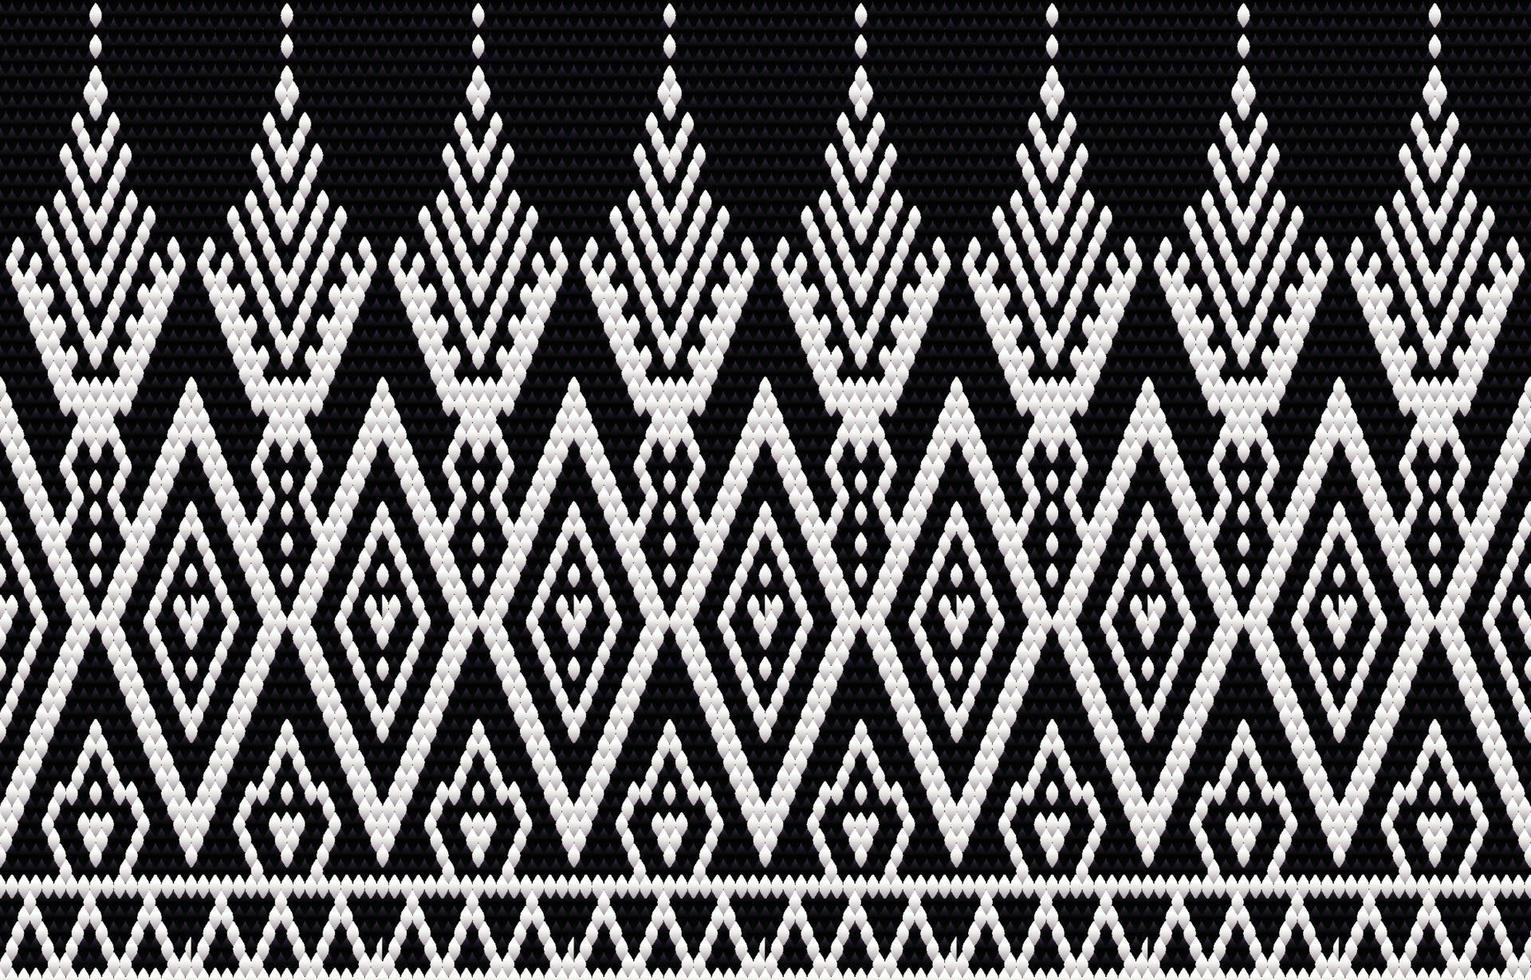 broderie de motifs ethniques géométriques et design traditionnel. texture de vecteur ethnique tribal. conception pour tapis, papier peint, vêtements, emballage, batik, tissu de style broderie dans des thèmes ethniques.